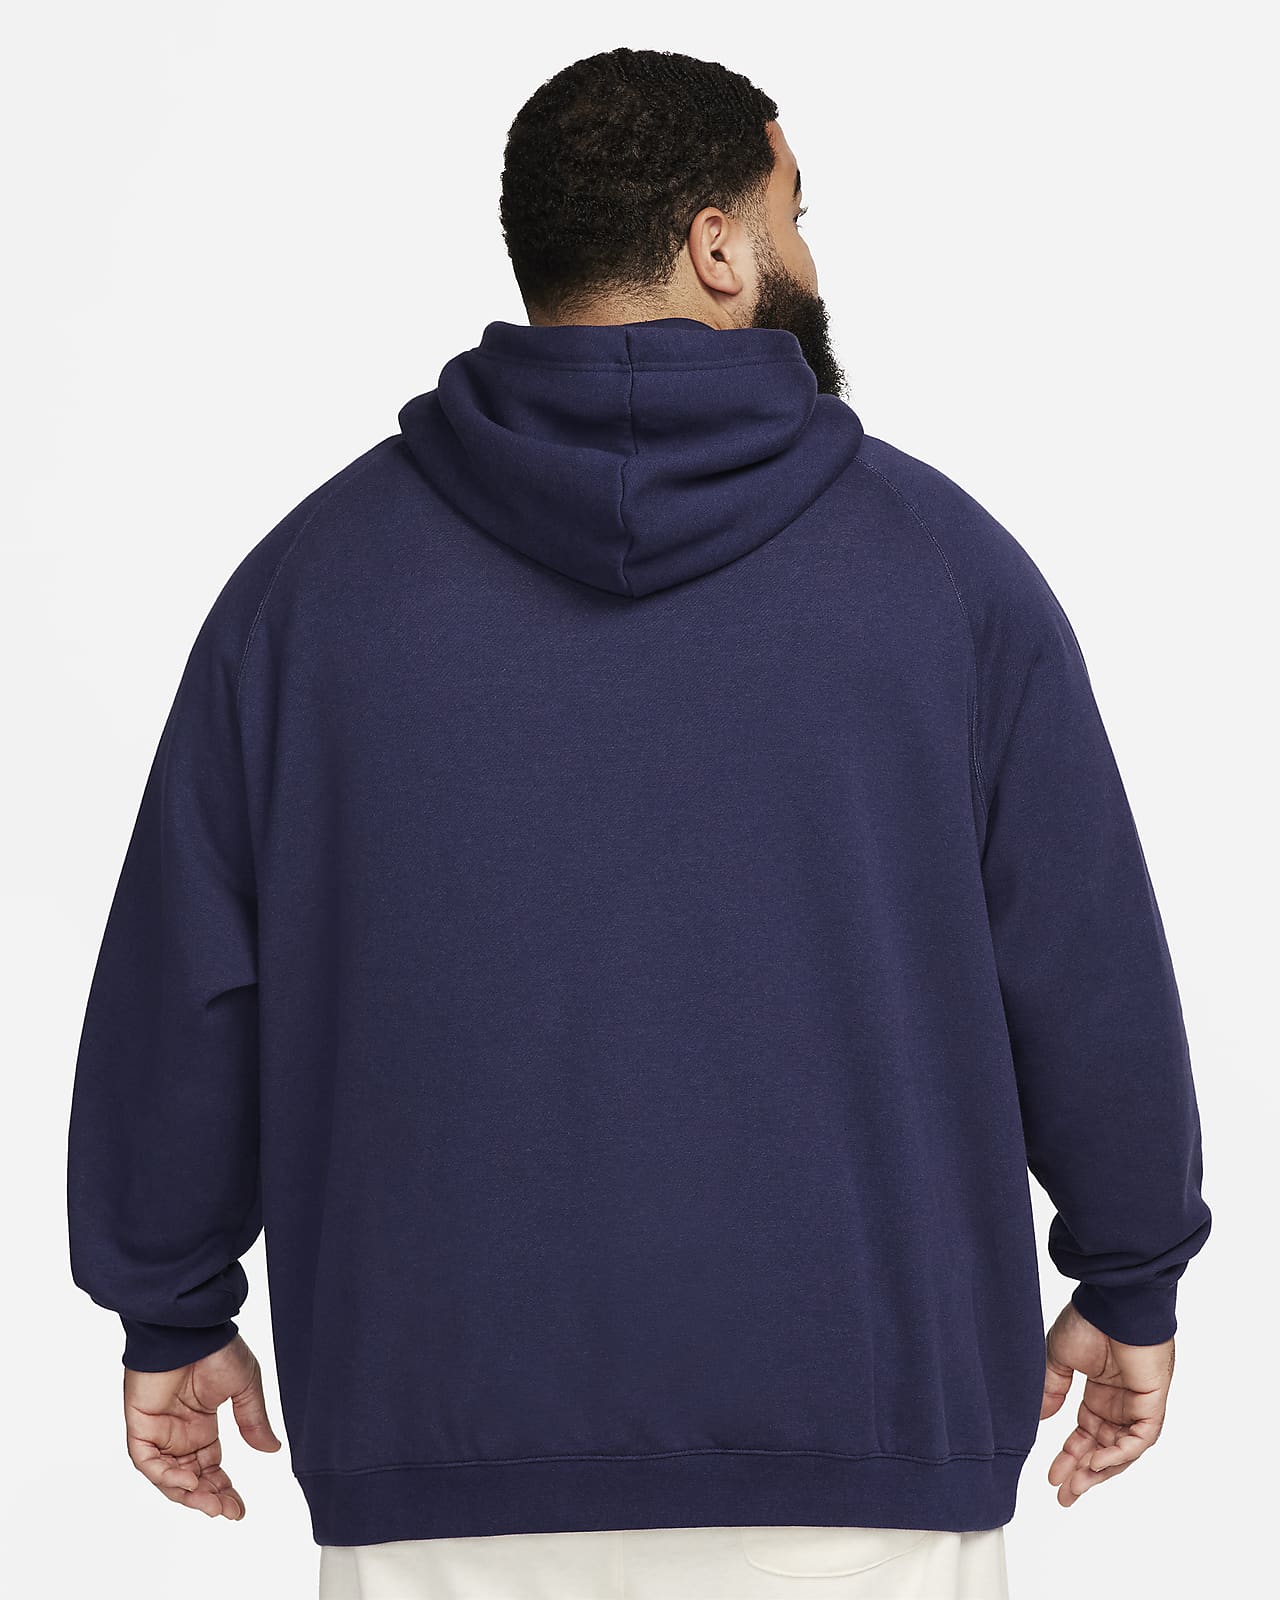 Nike Men's LeBron Pullover Hoodie, Blue, Size: XL, Fleece